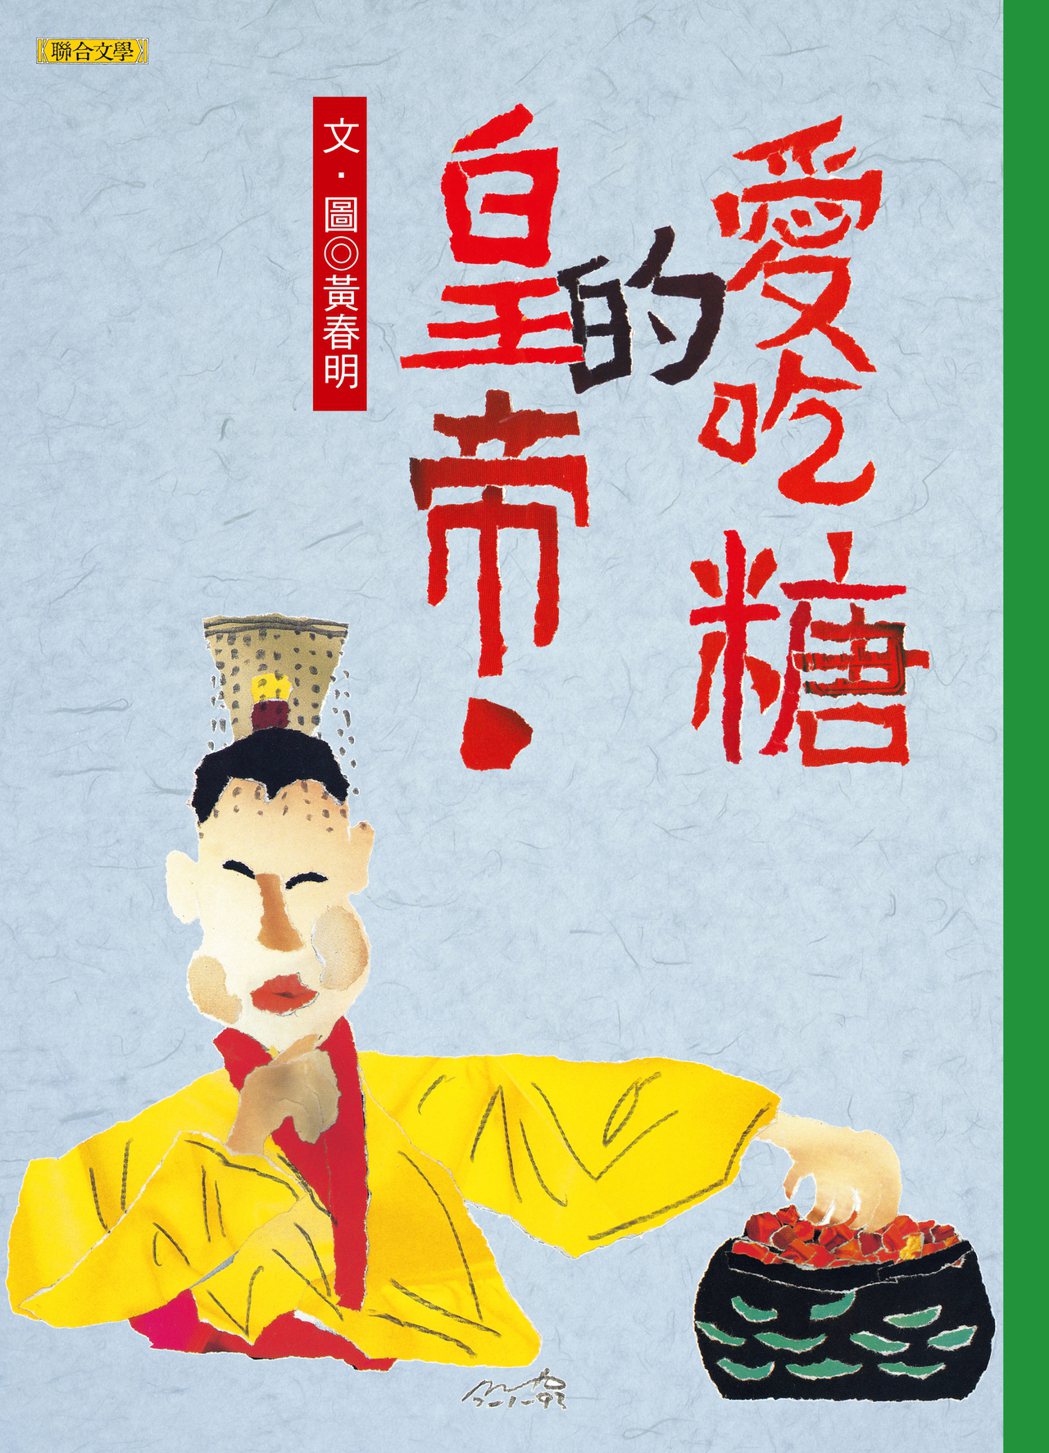 書名：《愛吃糖的皇帝》
作者：黃春明 
出版社：聯合文學
出版時間：2011年3月25日